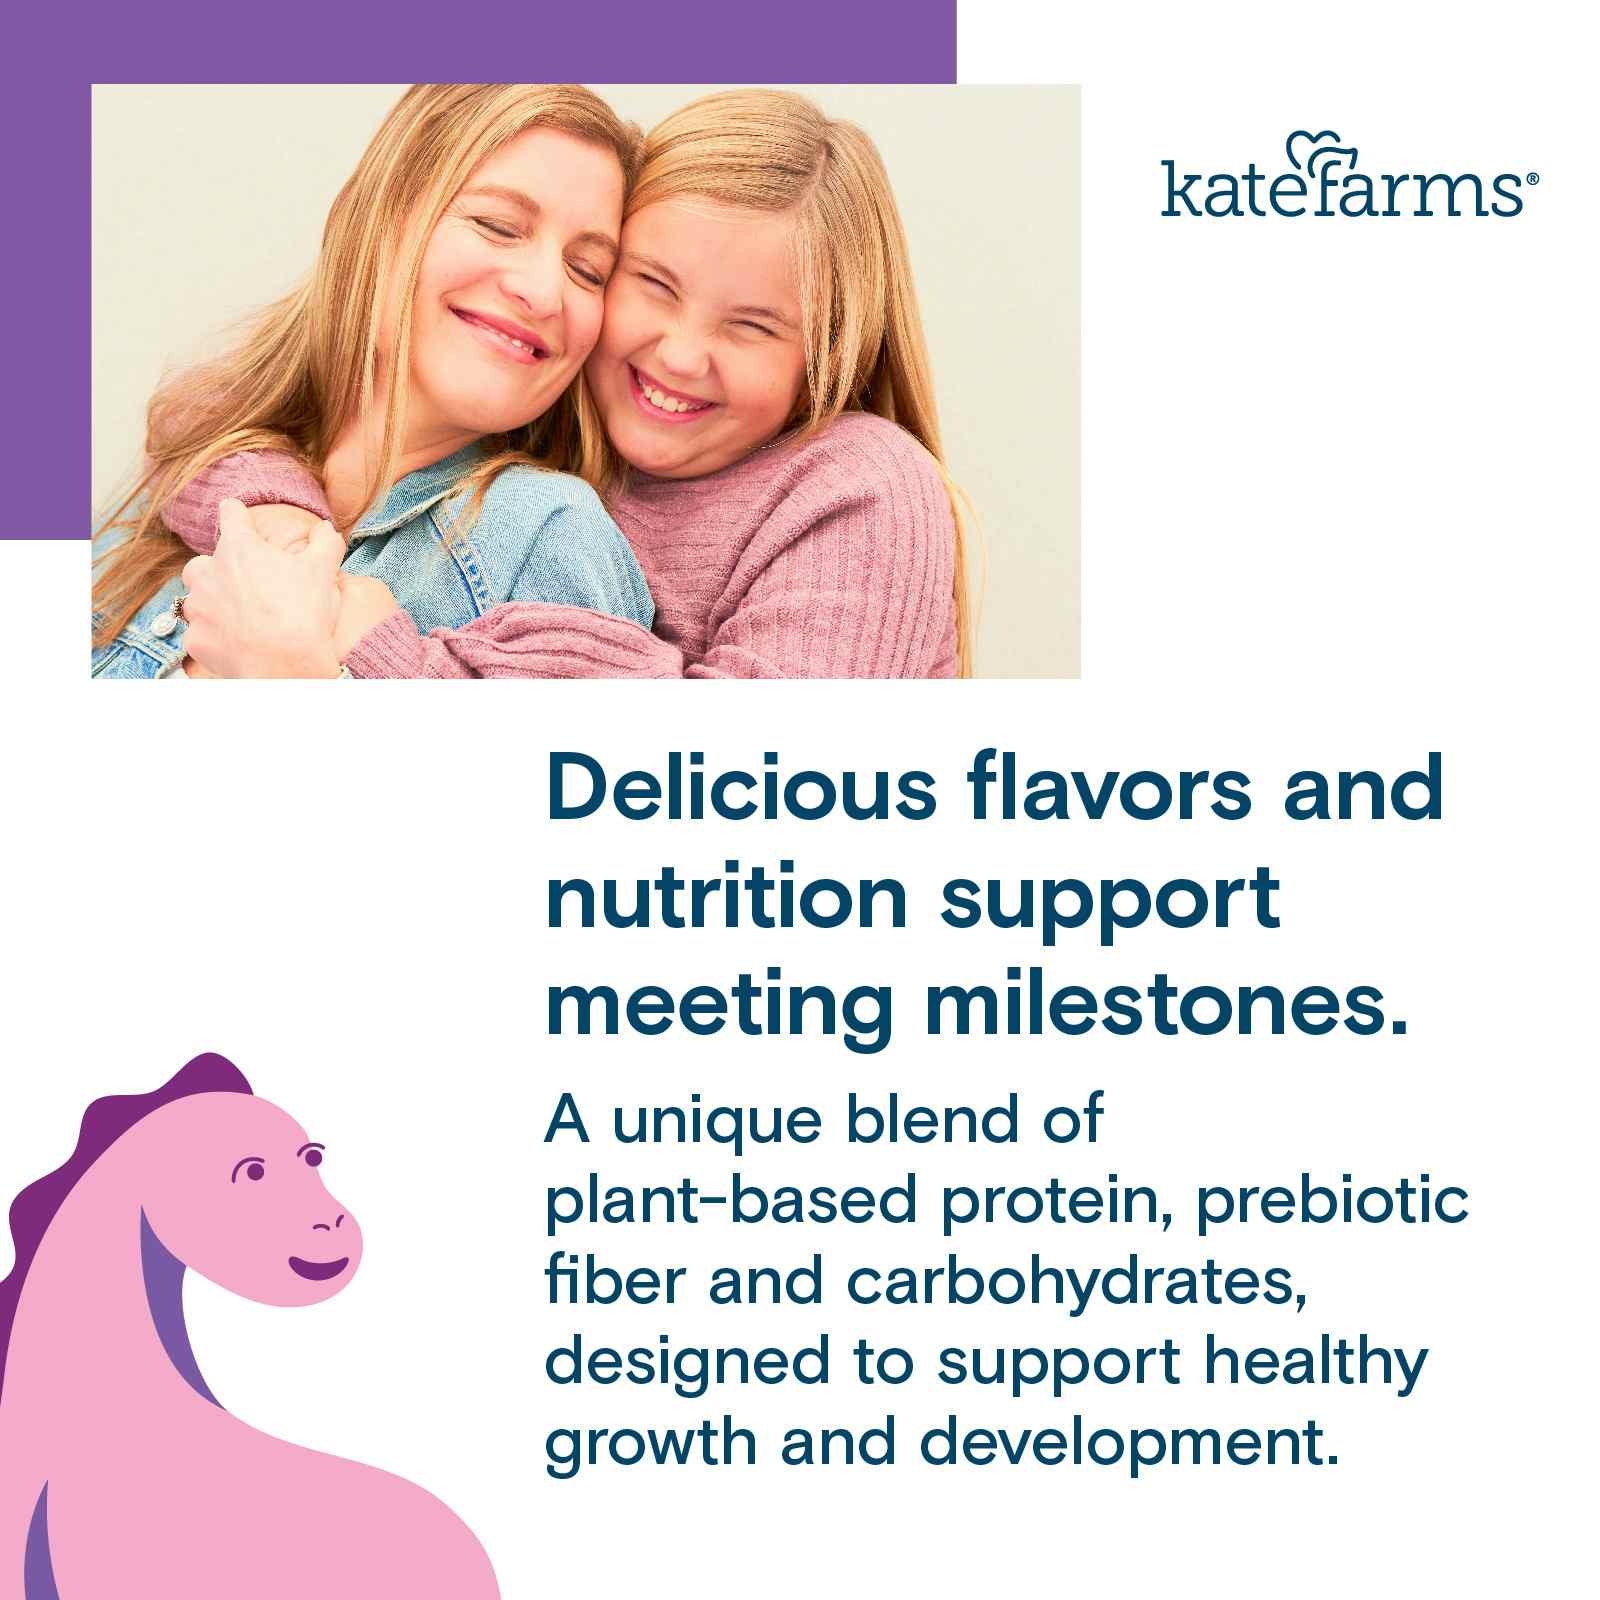 Kate Farms Pediatric Peptide 1.5 Sole-Source Nutrition Formula, Plain, 8.45 oz.